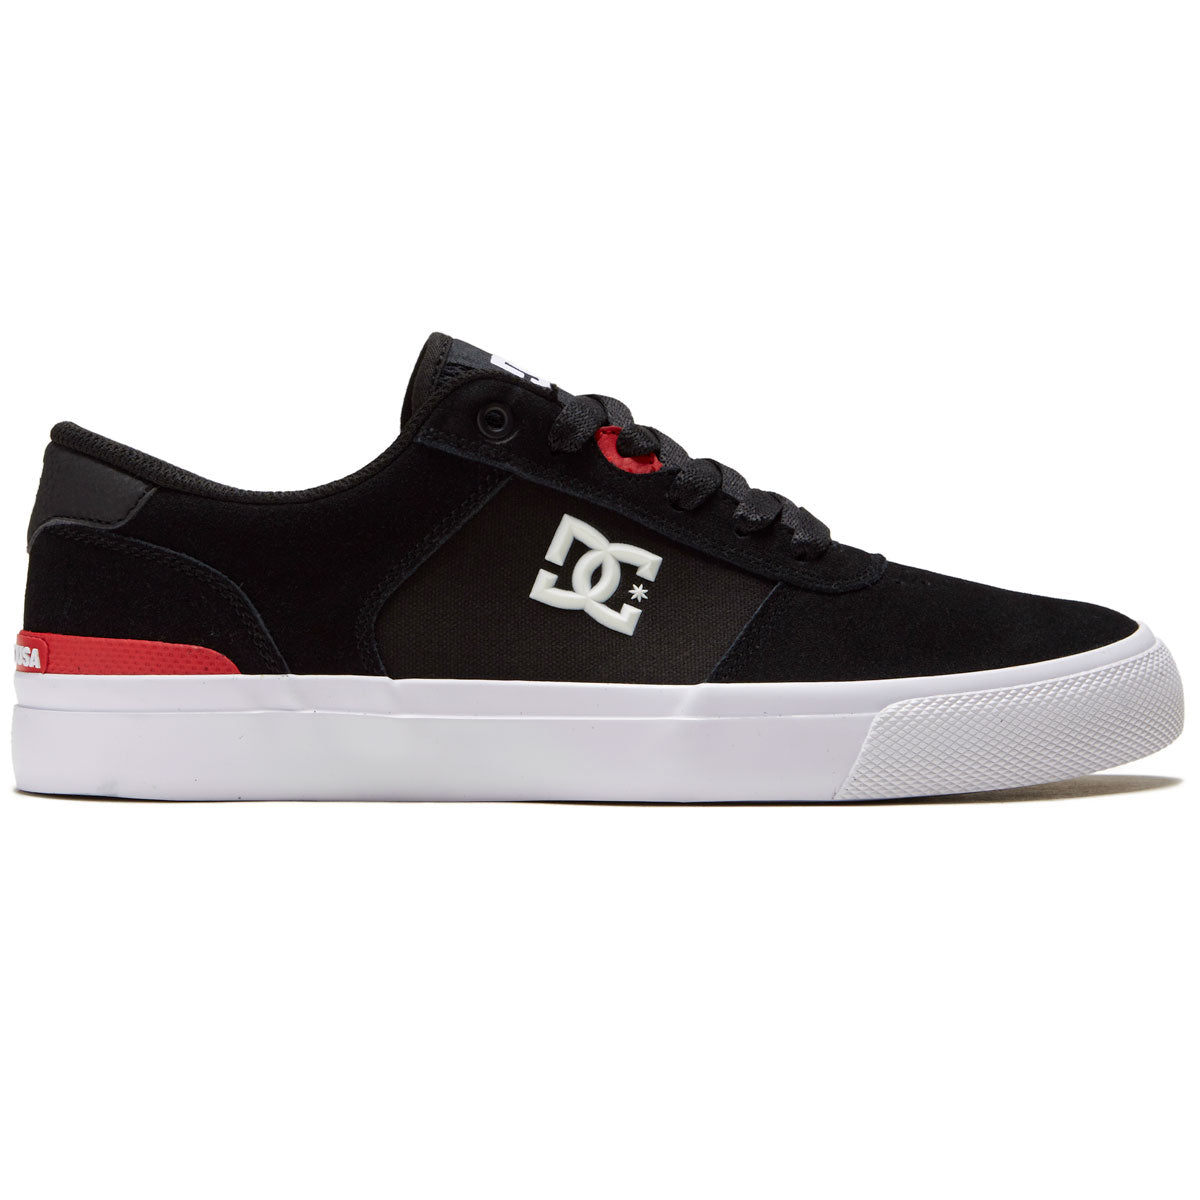 DC Teknic S Shoes - Black/White image 1